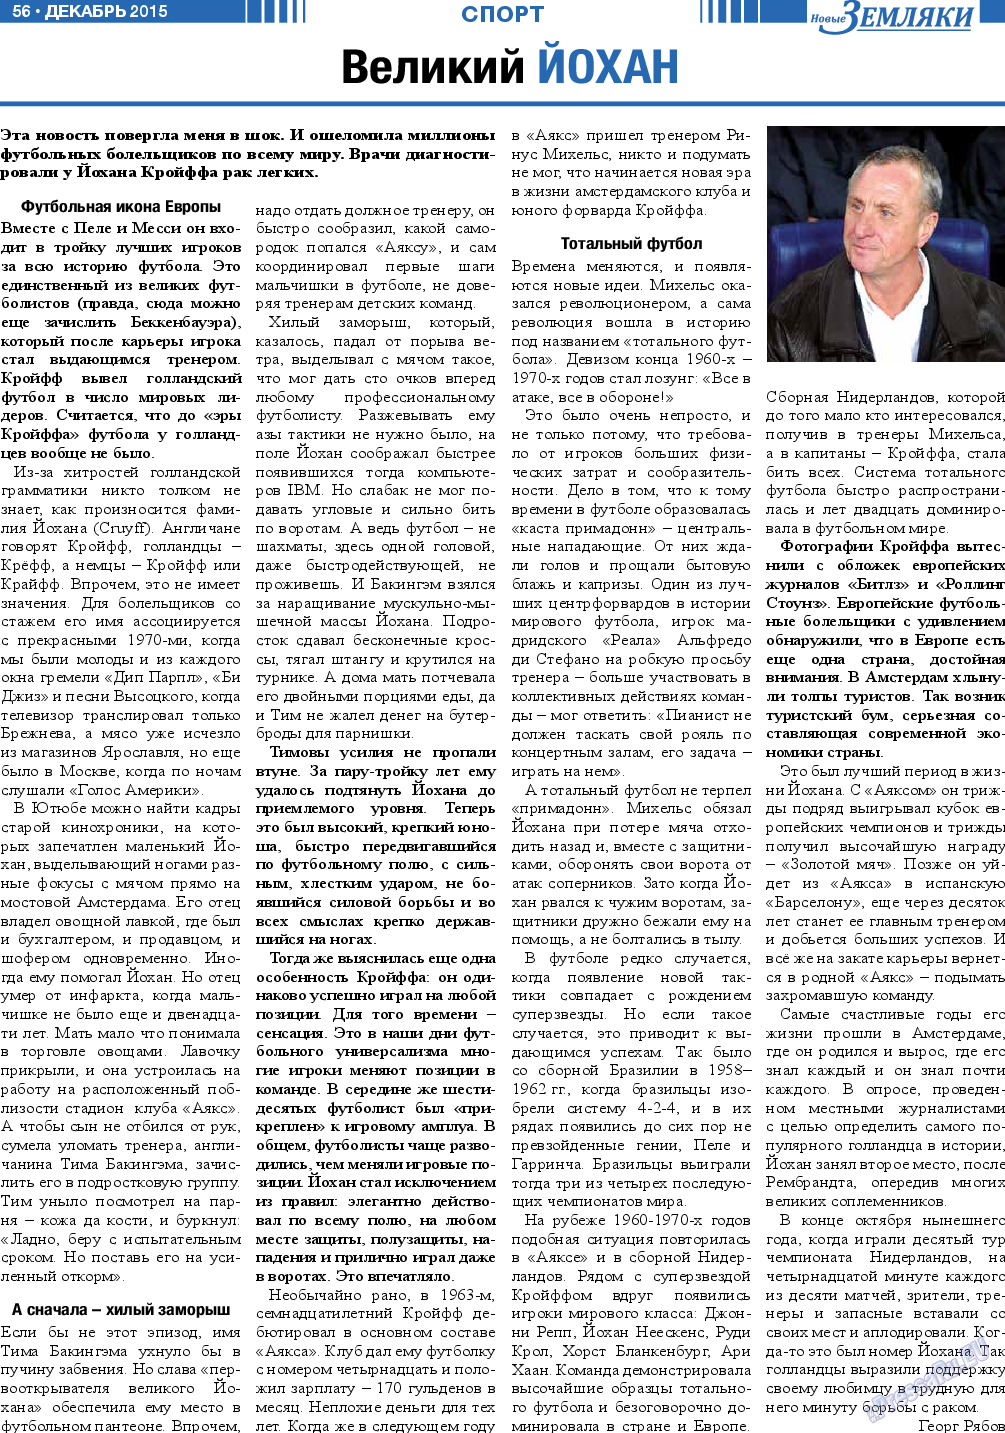 Новые Земляки (газета). 2015 год, номер 12, стр. 56